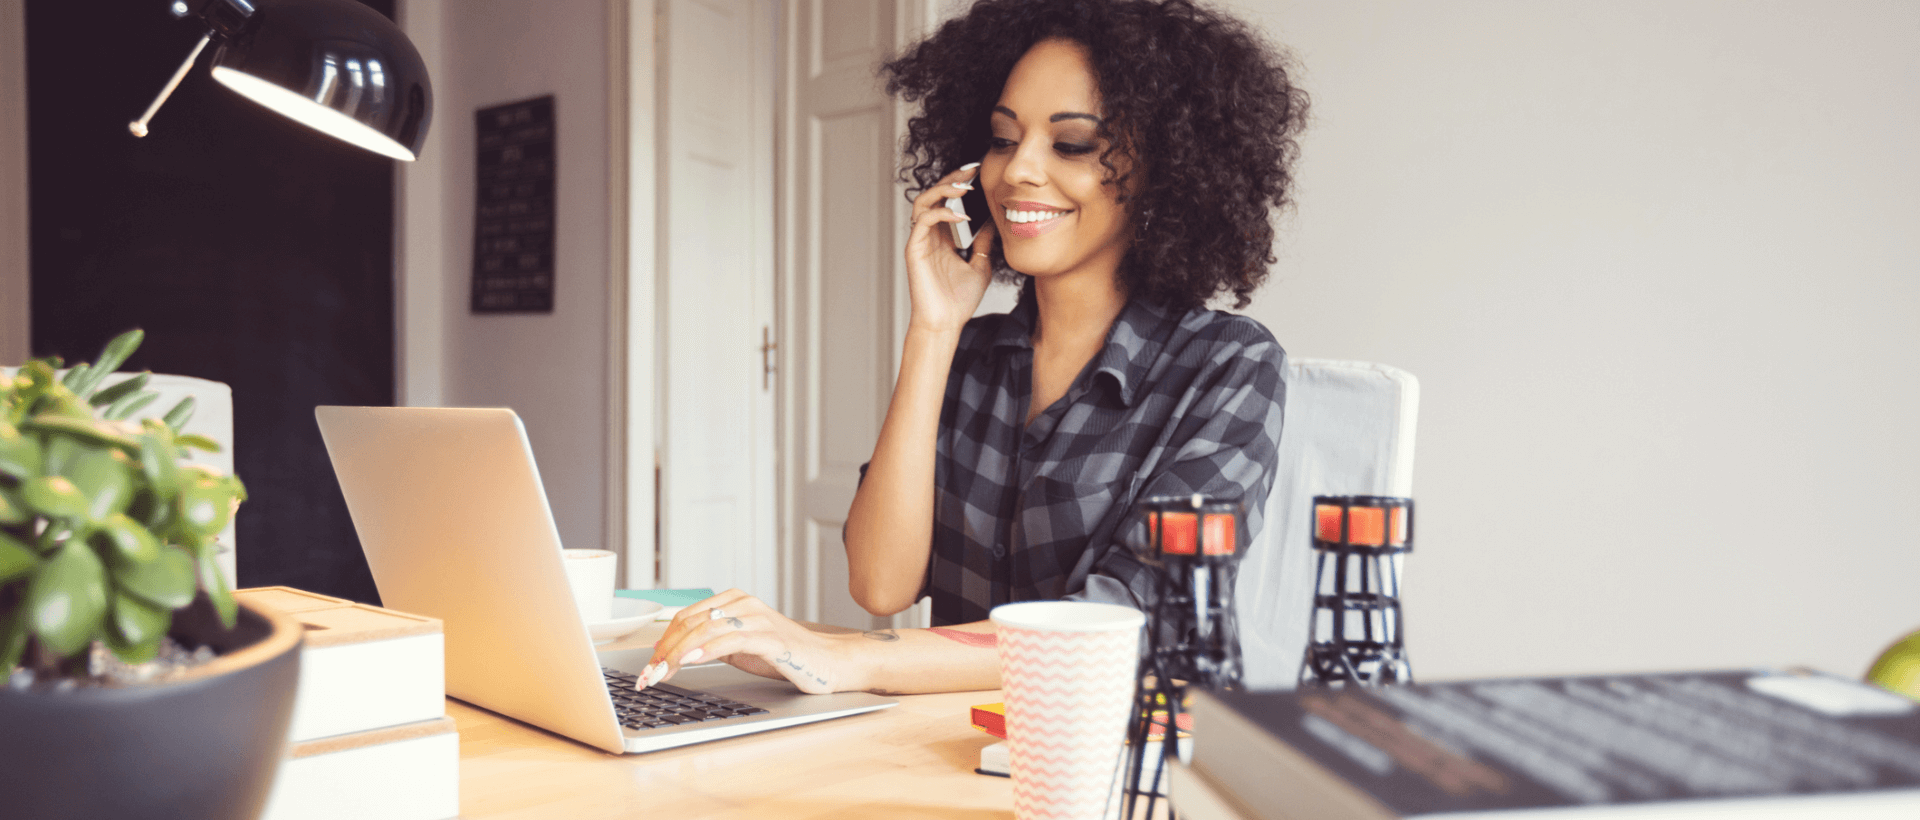 Egy fiatal nő telefonál az okostelefonjával a munkahelyén, a másik kezével ír a laptopján, irodai környezetben